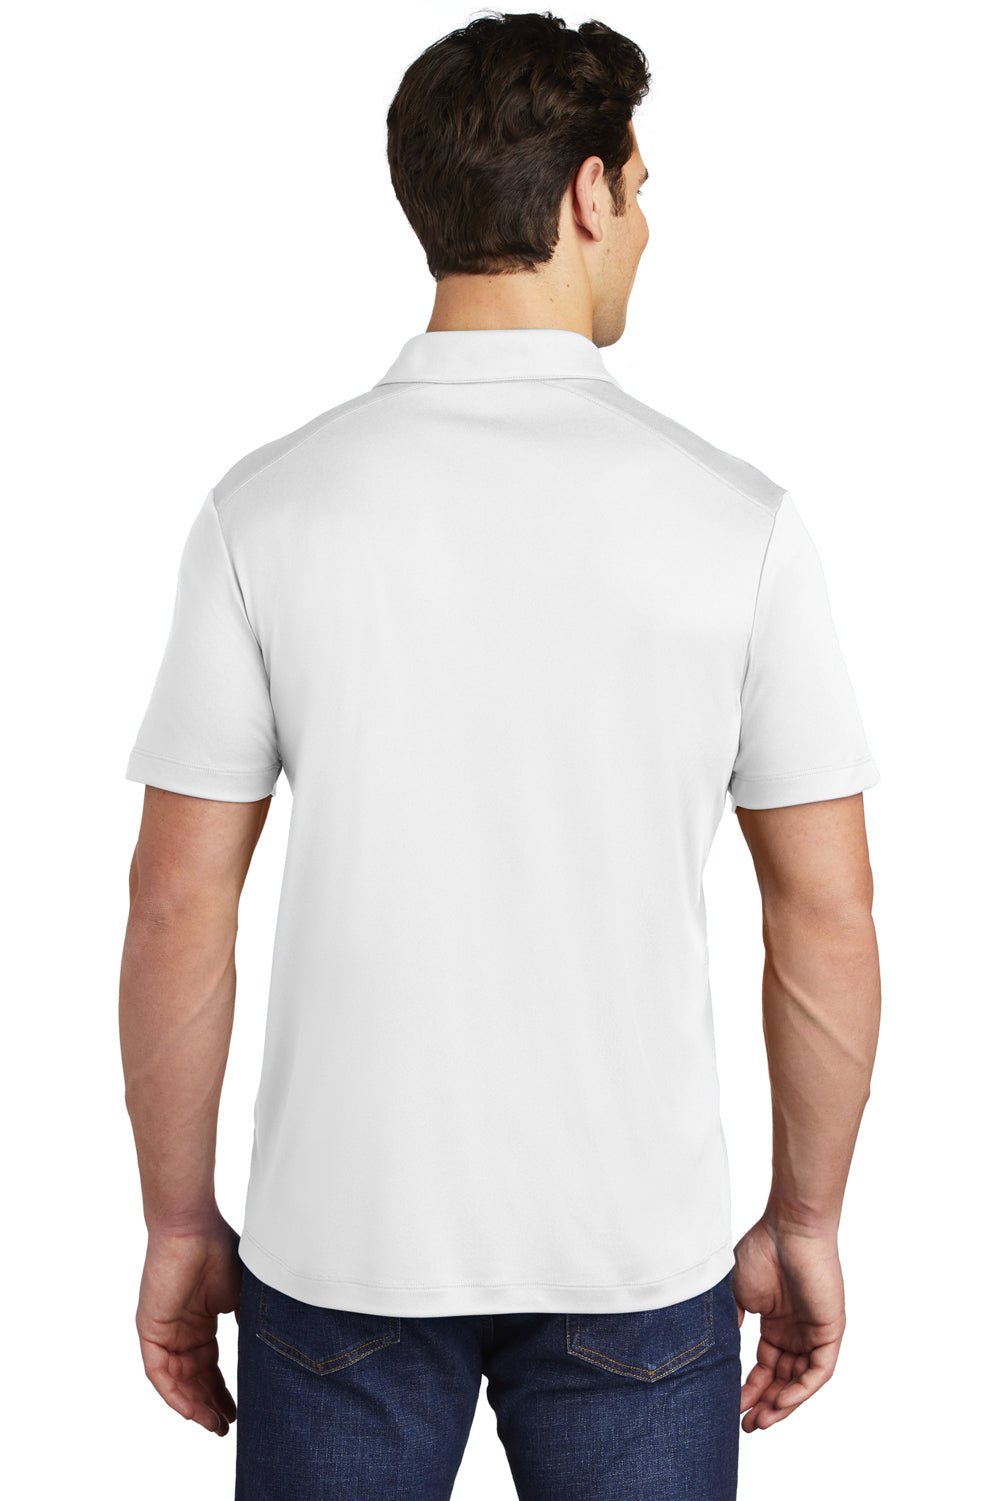 Sport-Tek Mens Short Sleeve Polo Shirt White Side